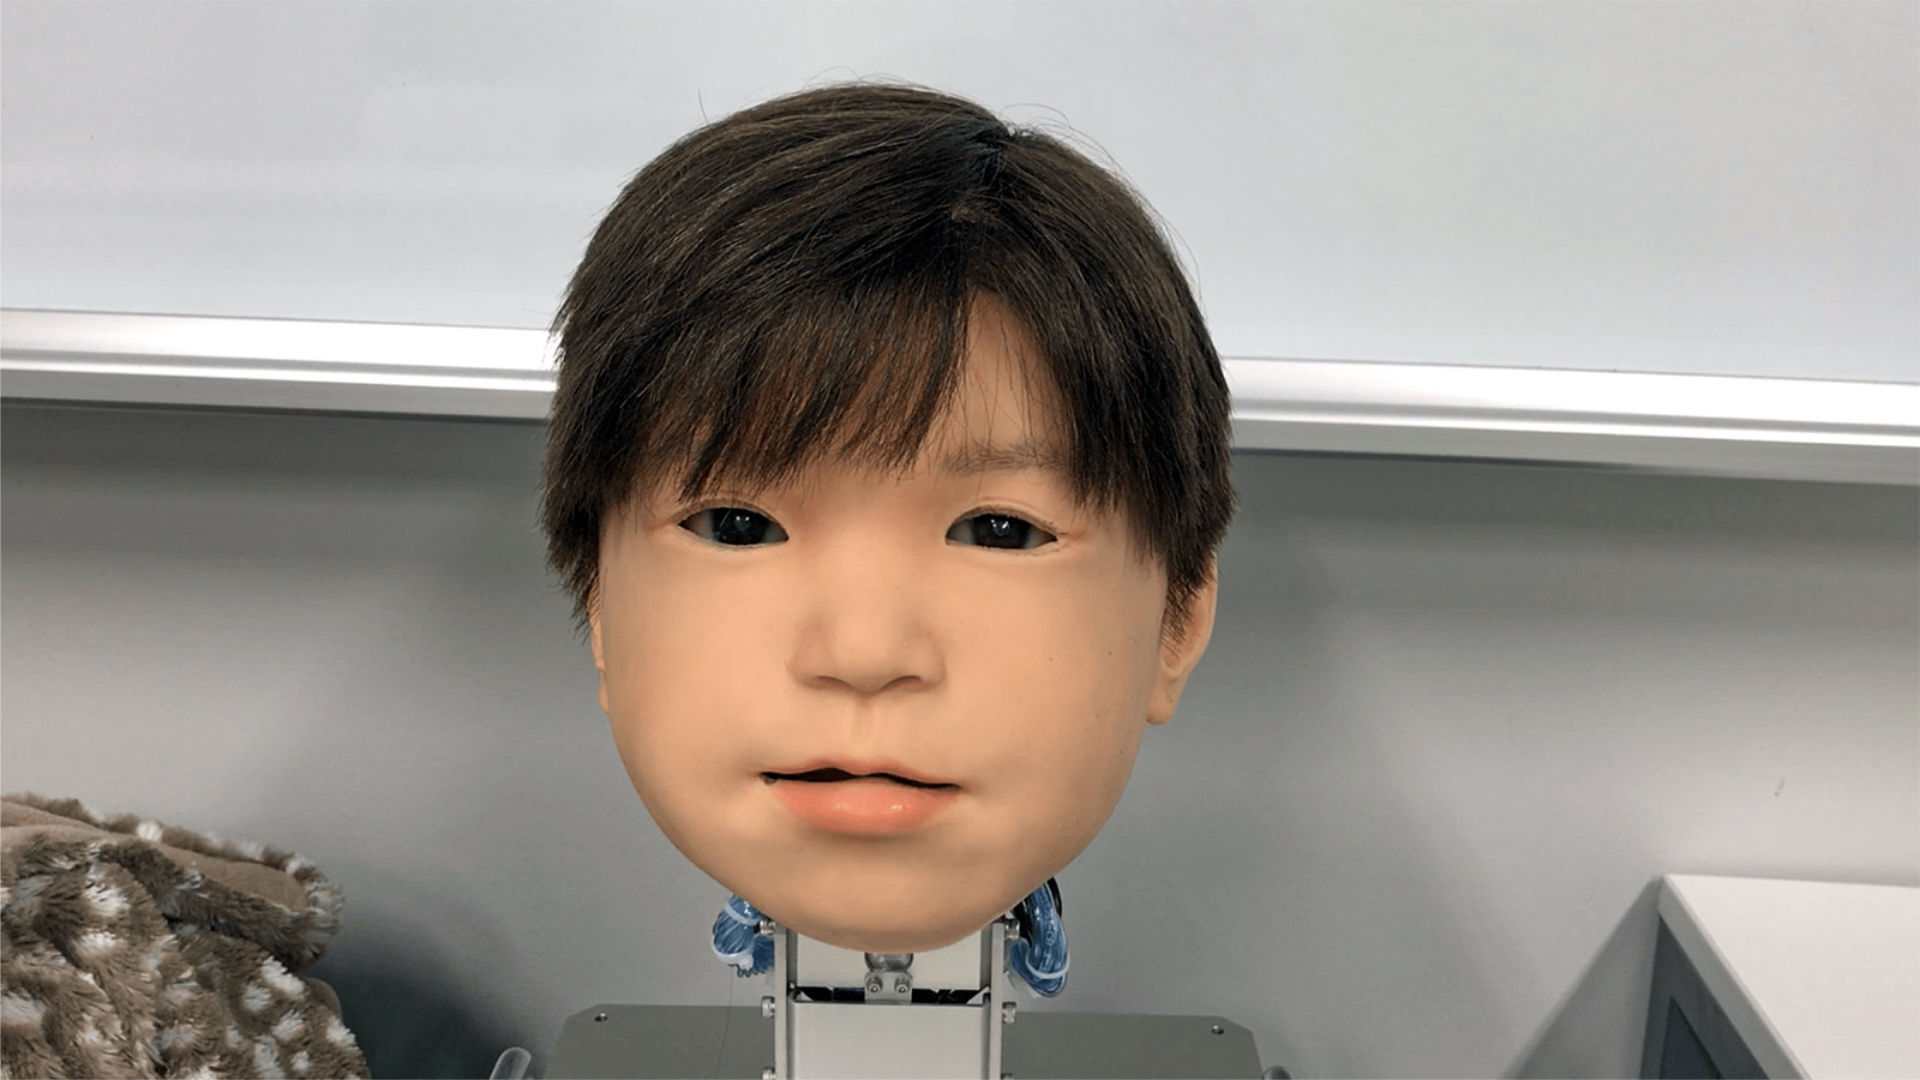 Rosto de robô infantil recebe mais expressões faciais